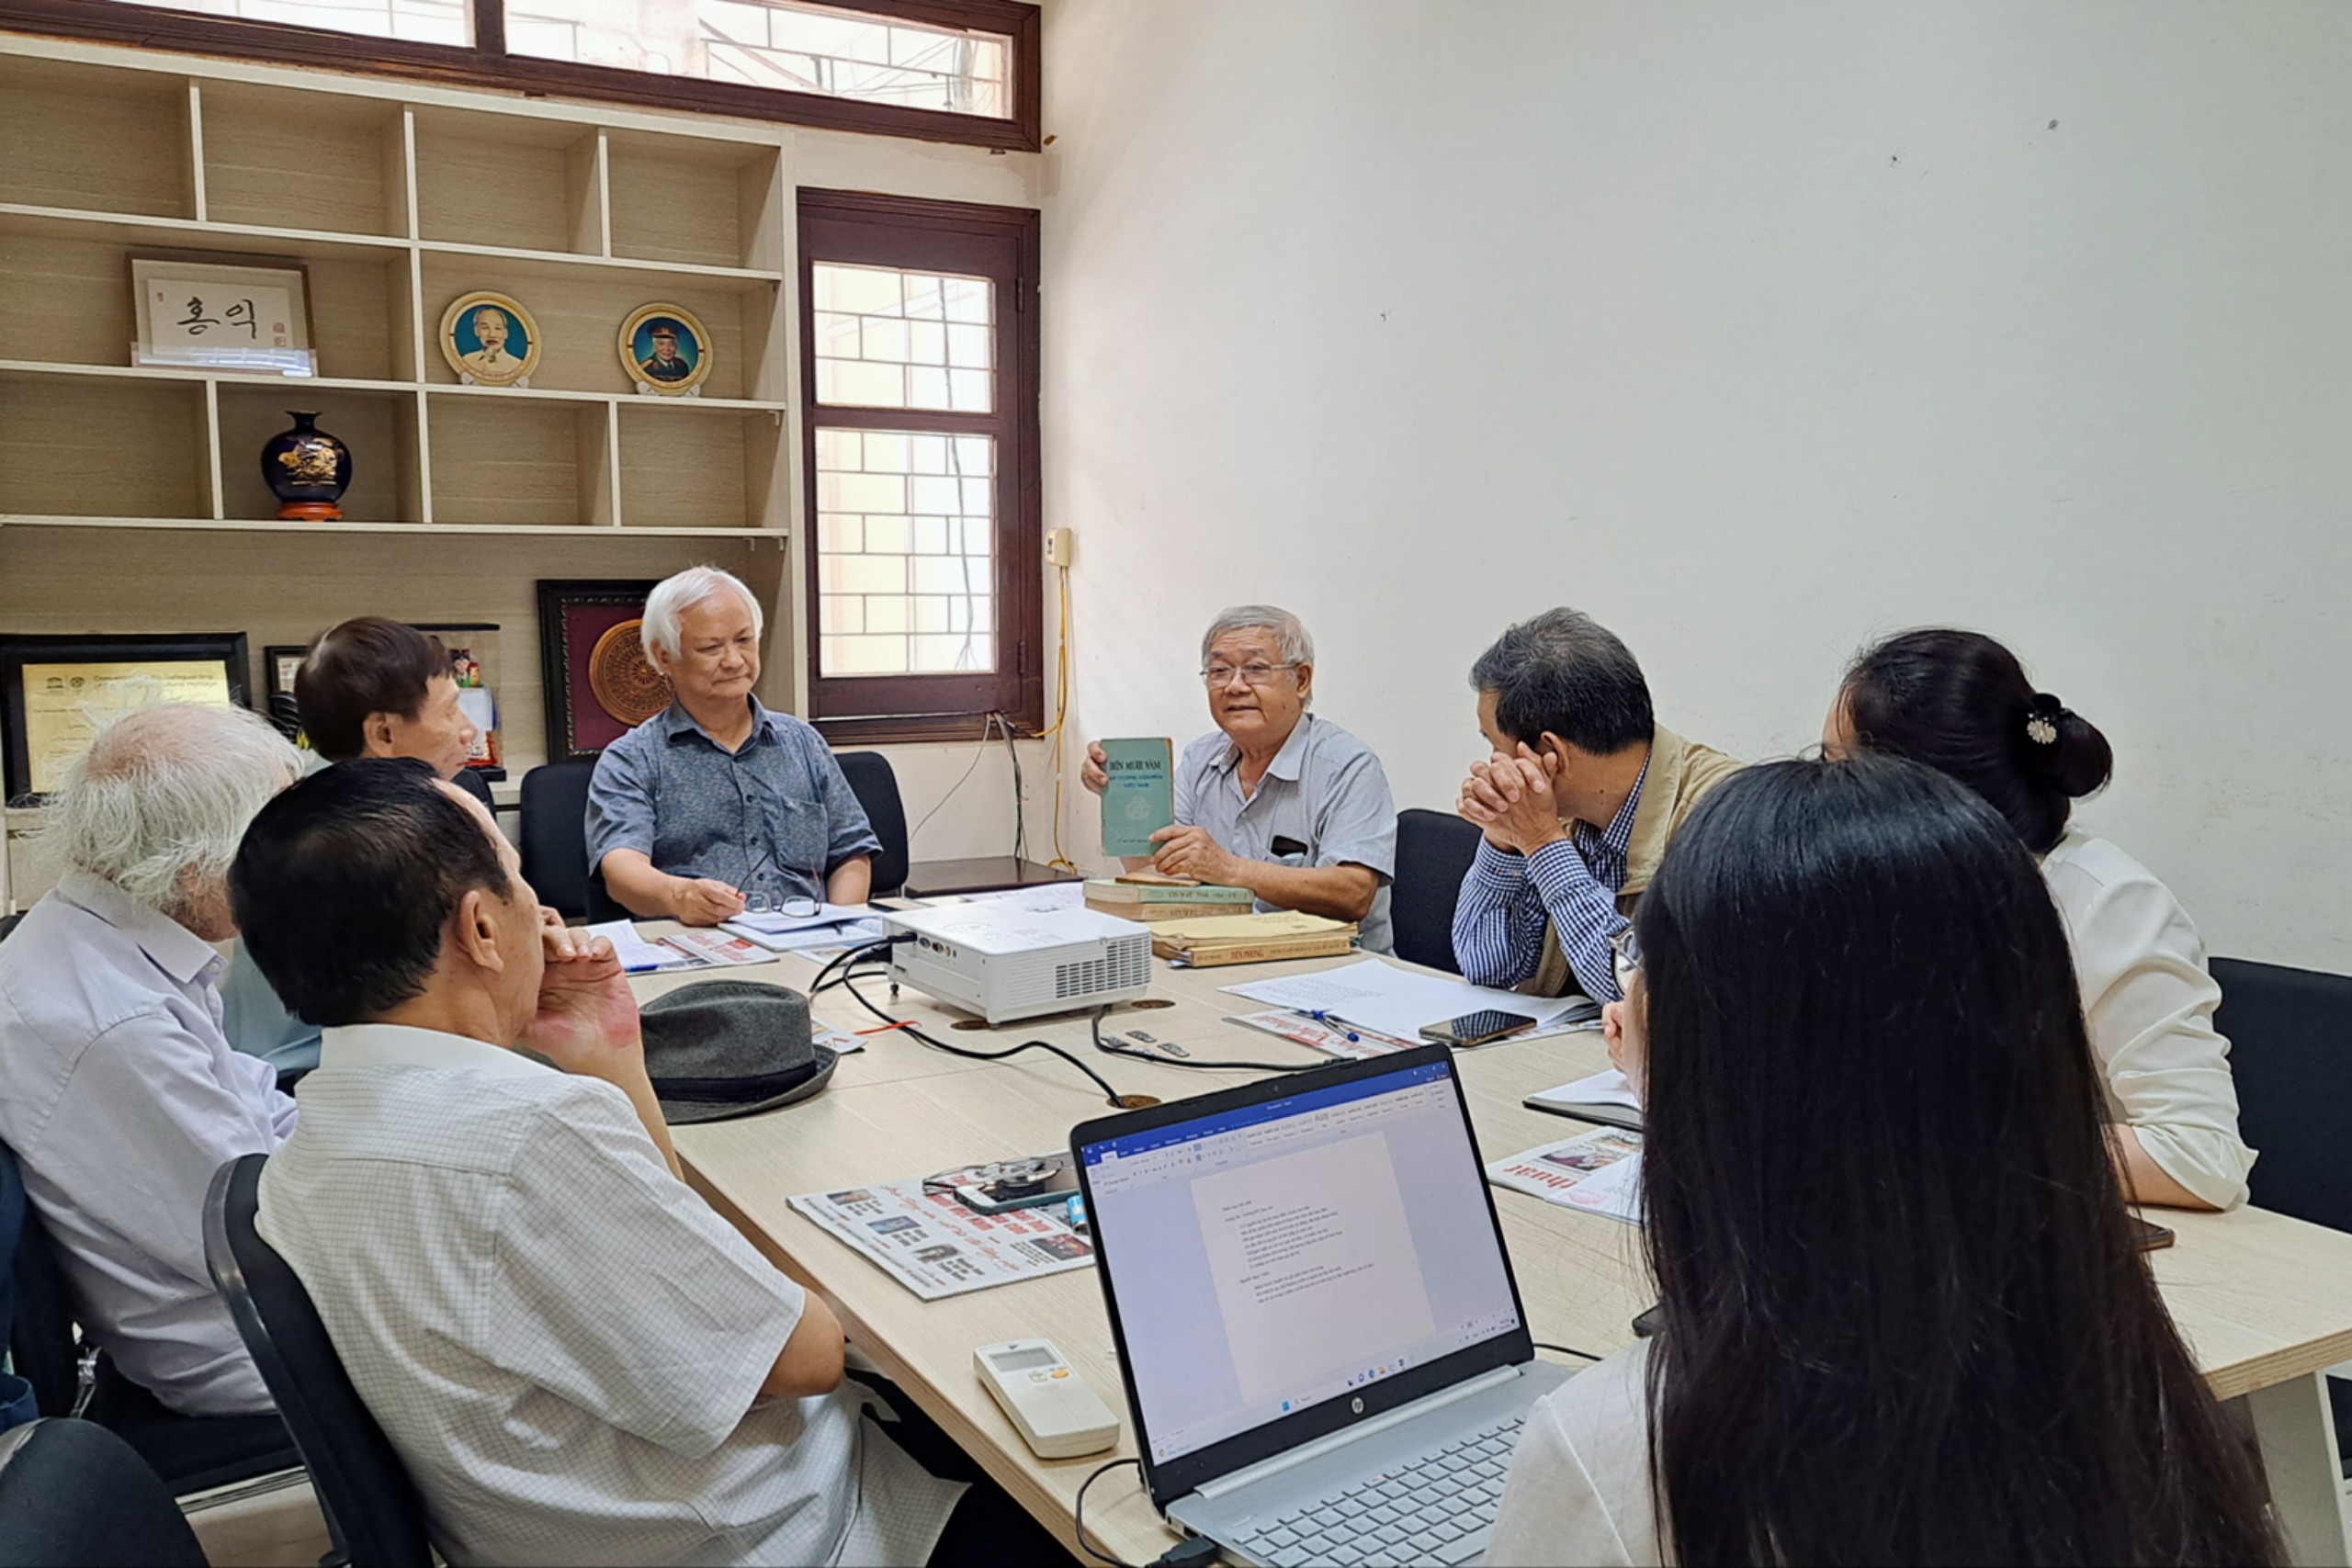 (Ảnh) Những dấu ấn đặc biệt của cuộc thi Tìm hiểu 75 năm xây dựng và phát triển Liên hiệp các Hội Văn học nghệ thuật Việt Nam - 16